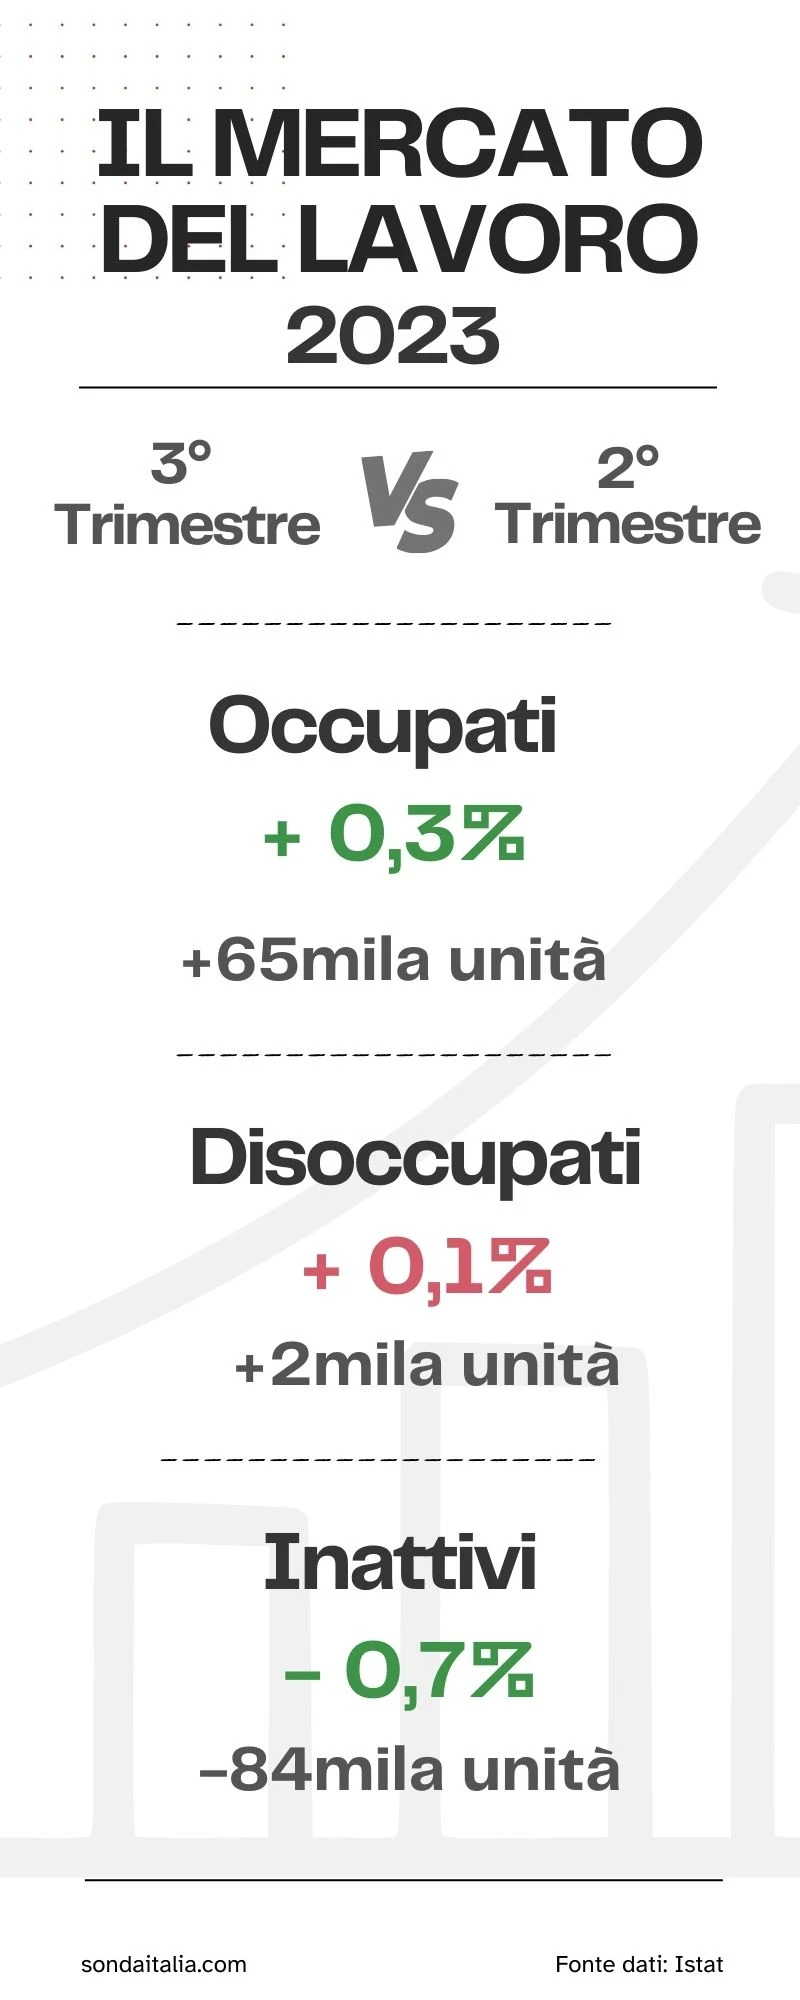 Infografica sul mercato del lavoro in Italia terzo trimestre 2023.